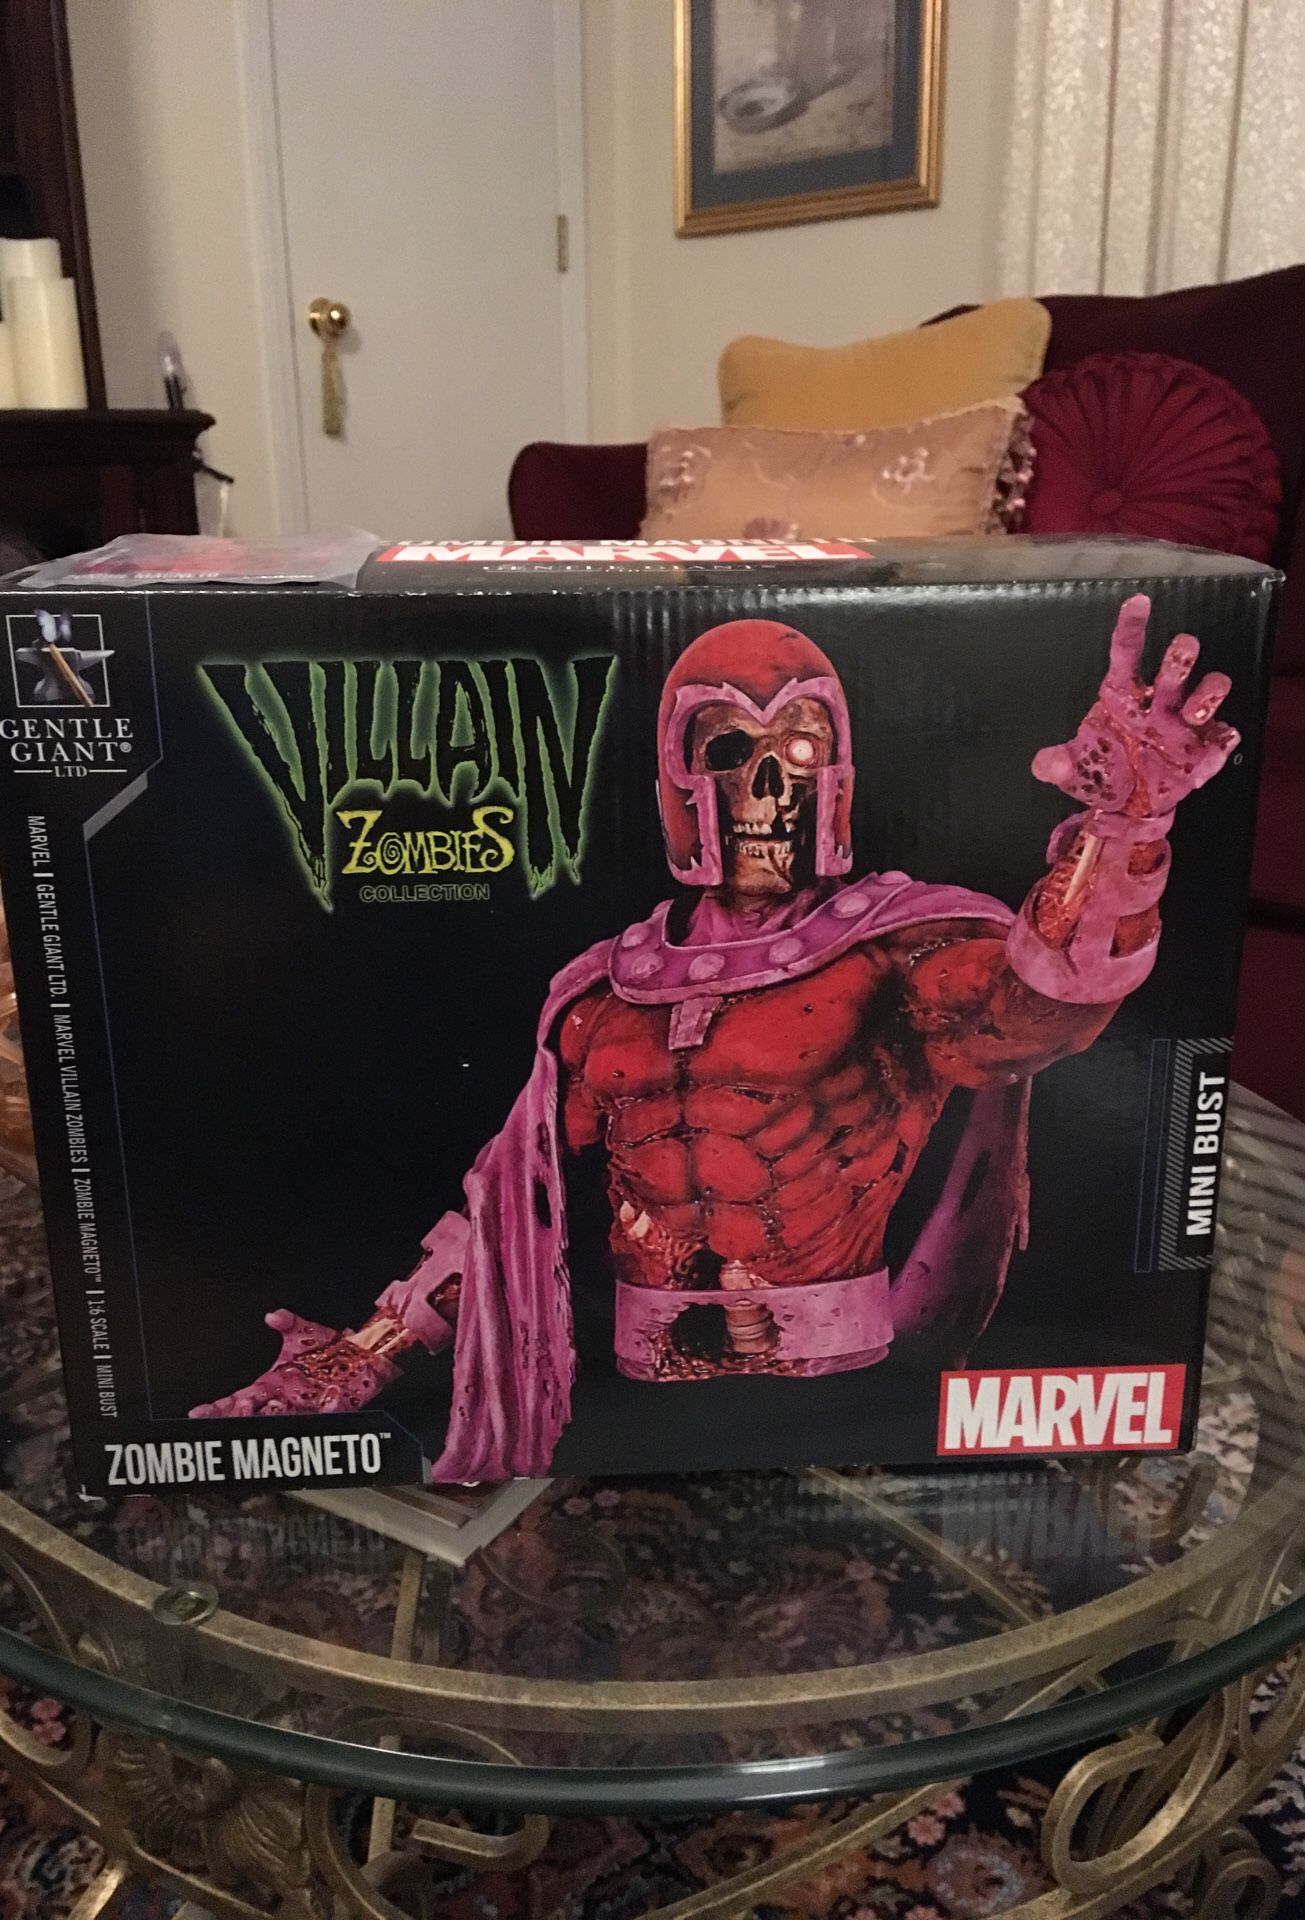 Marvel magneto zombie statue